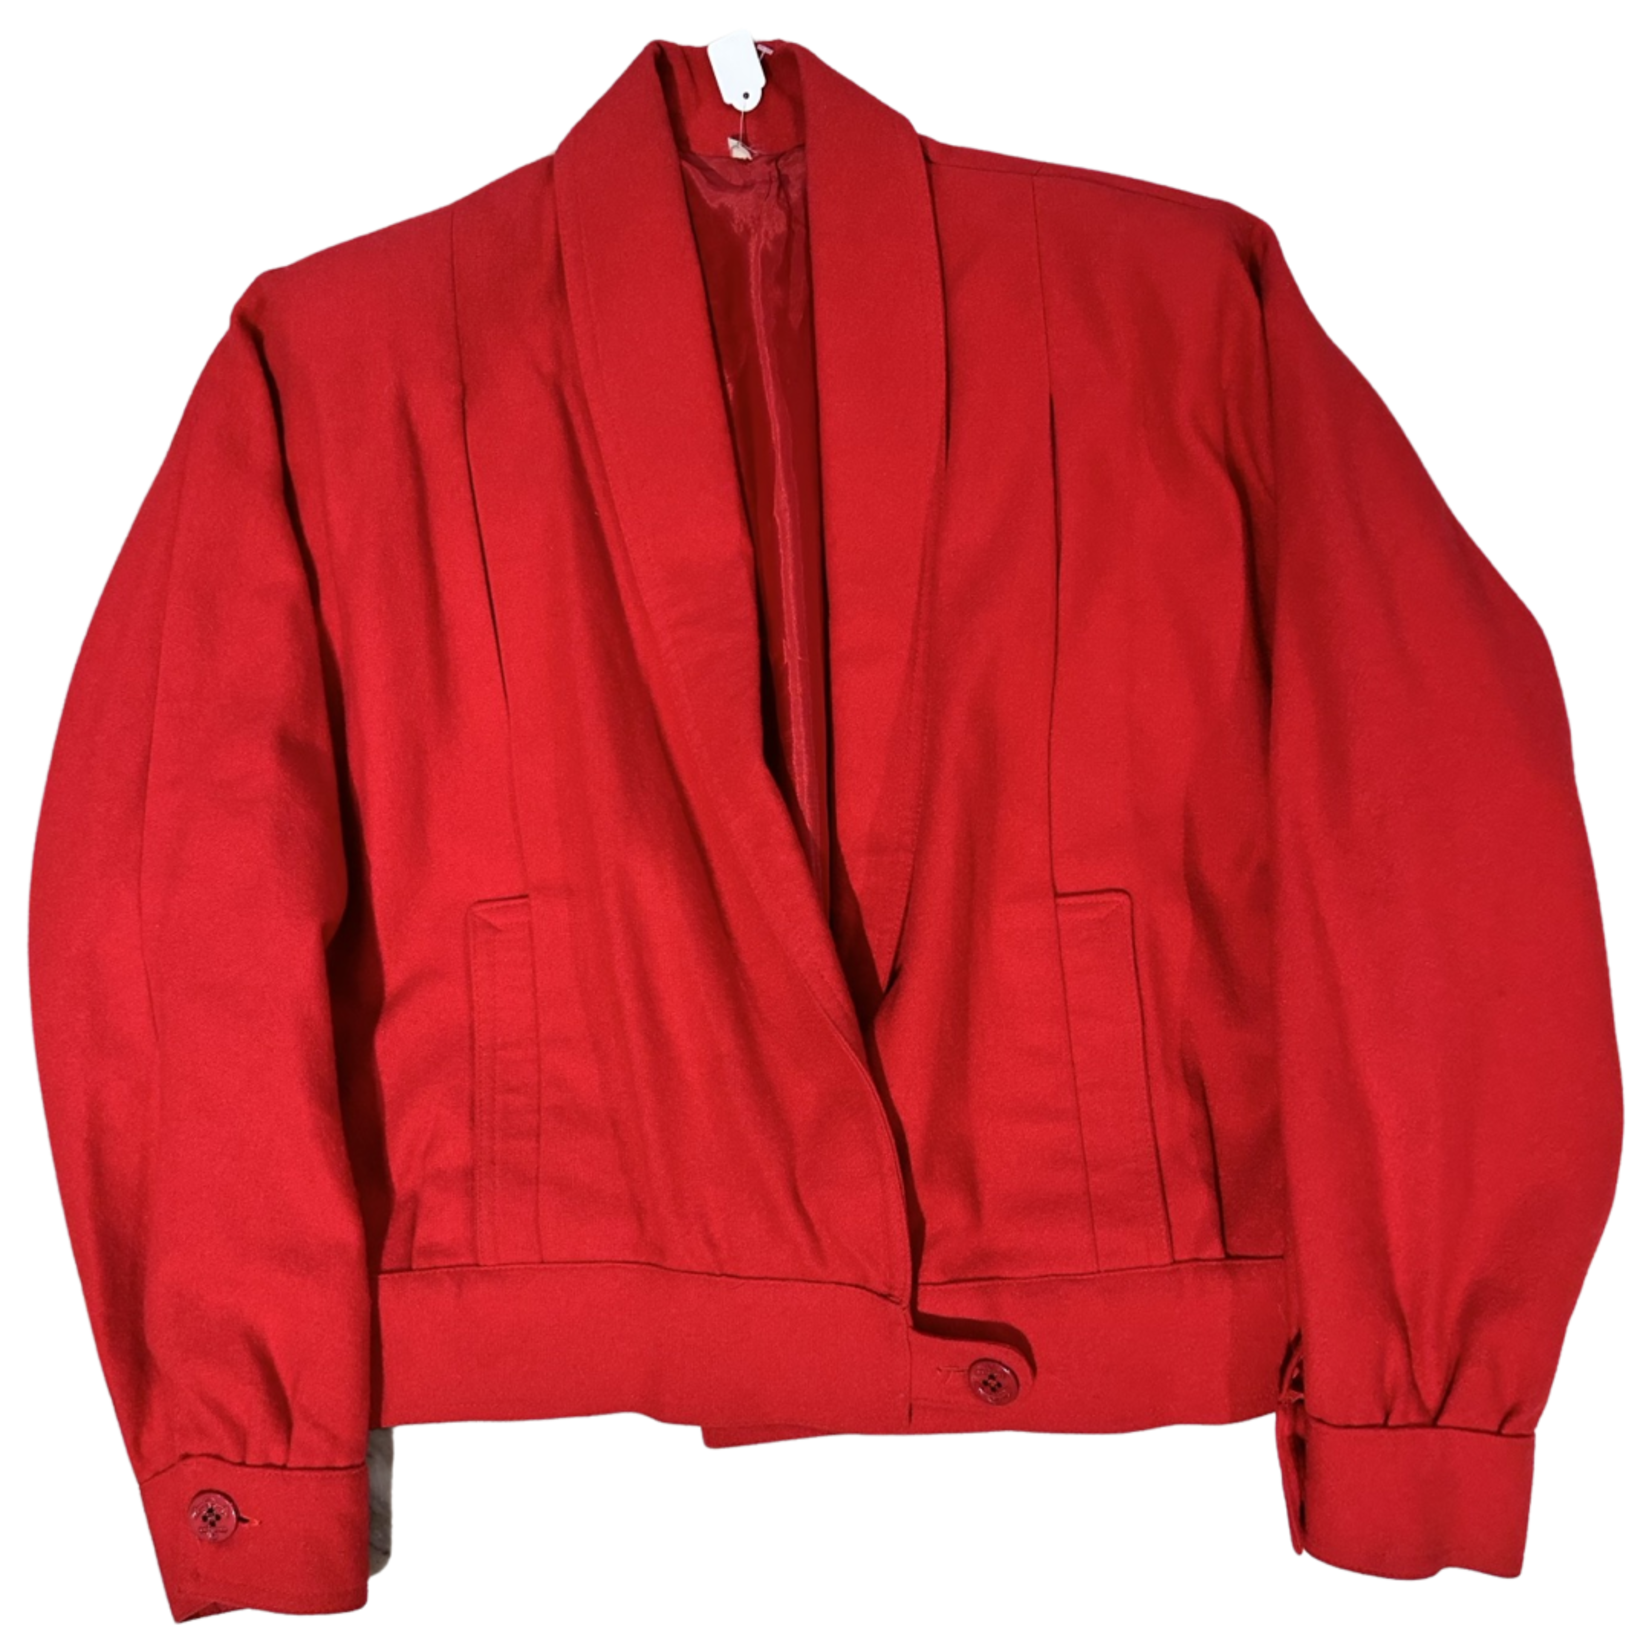 Vintage Vintage rood jasje met vintage details size M